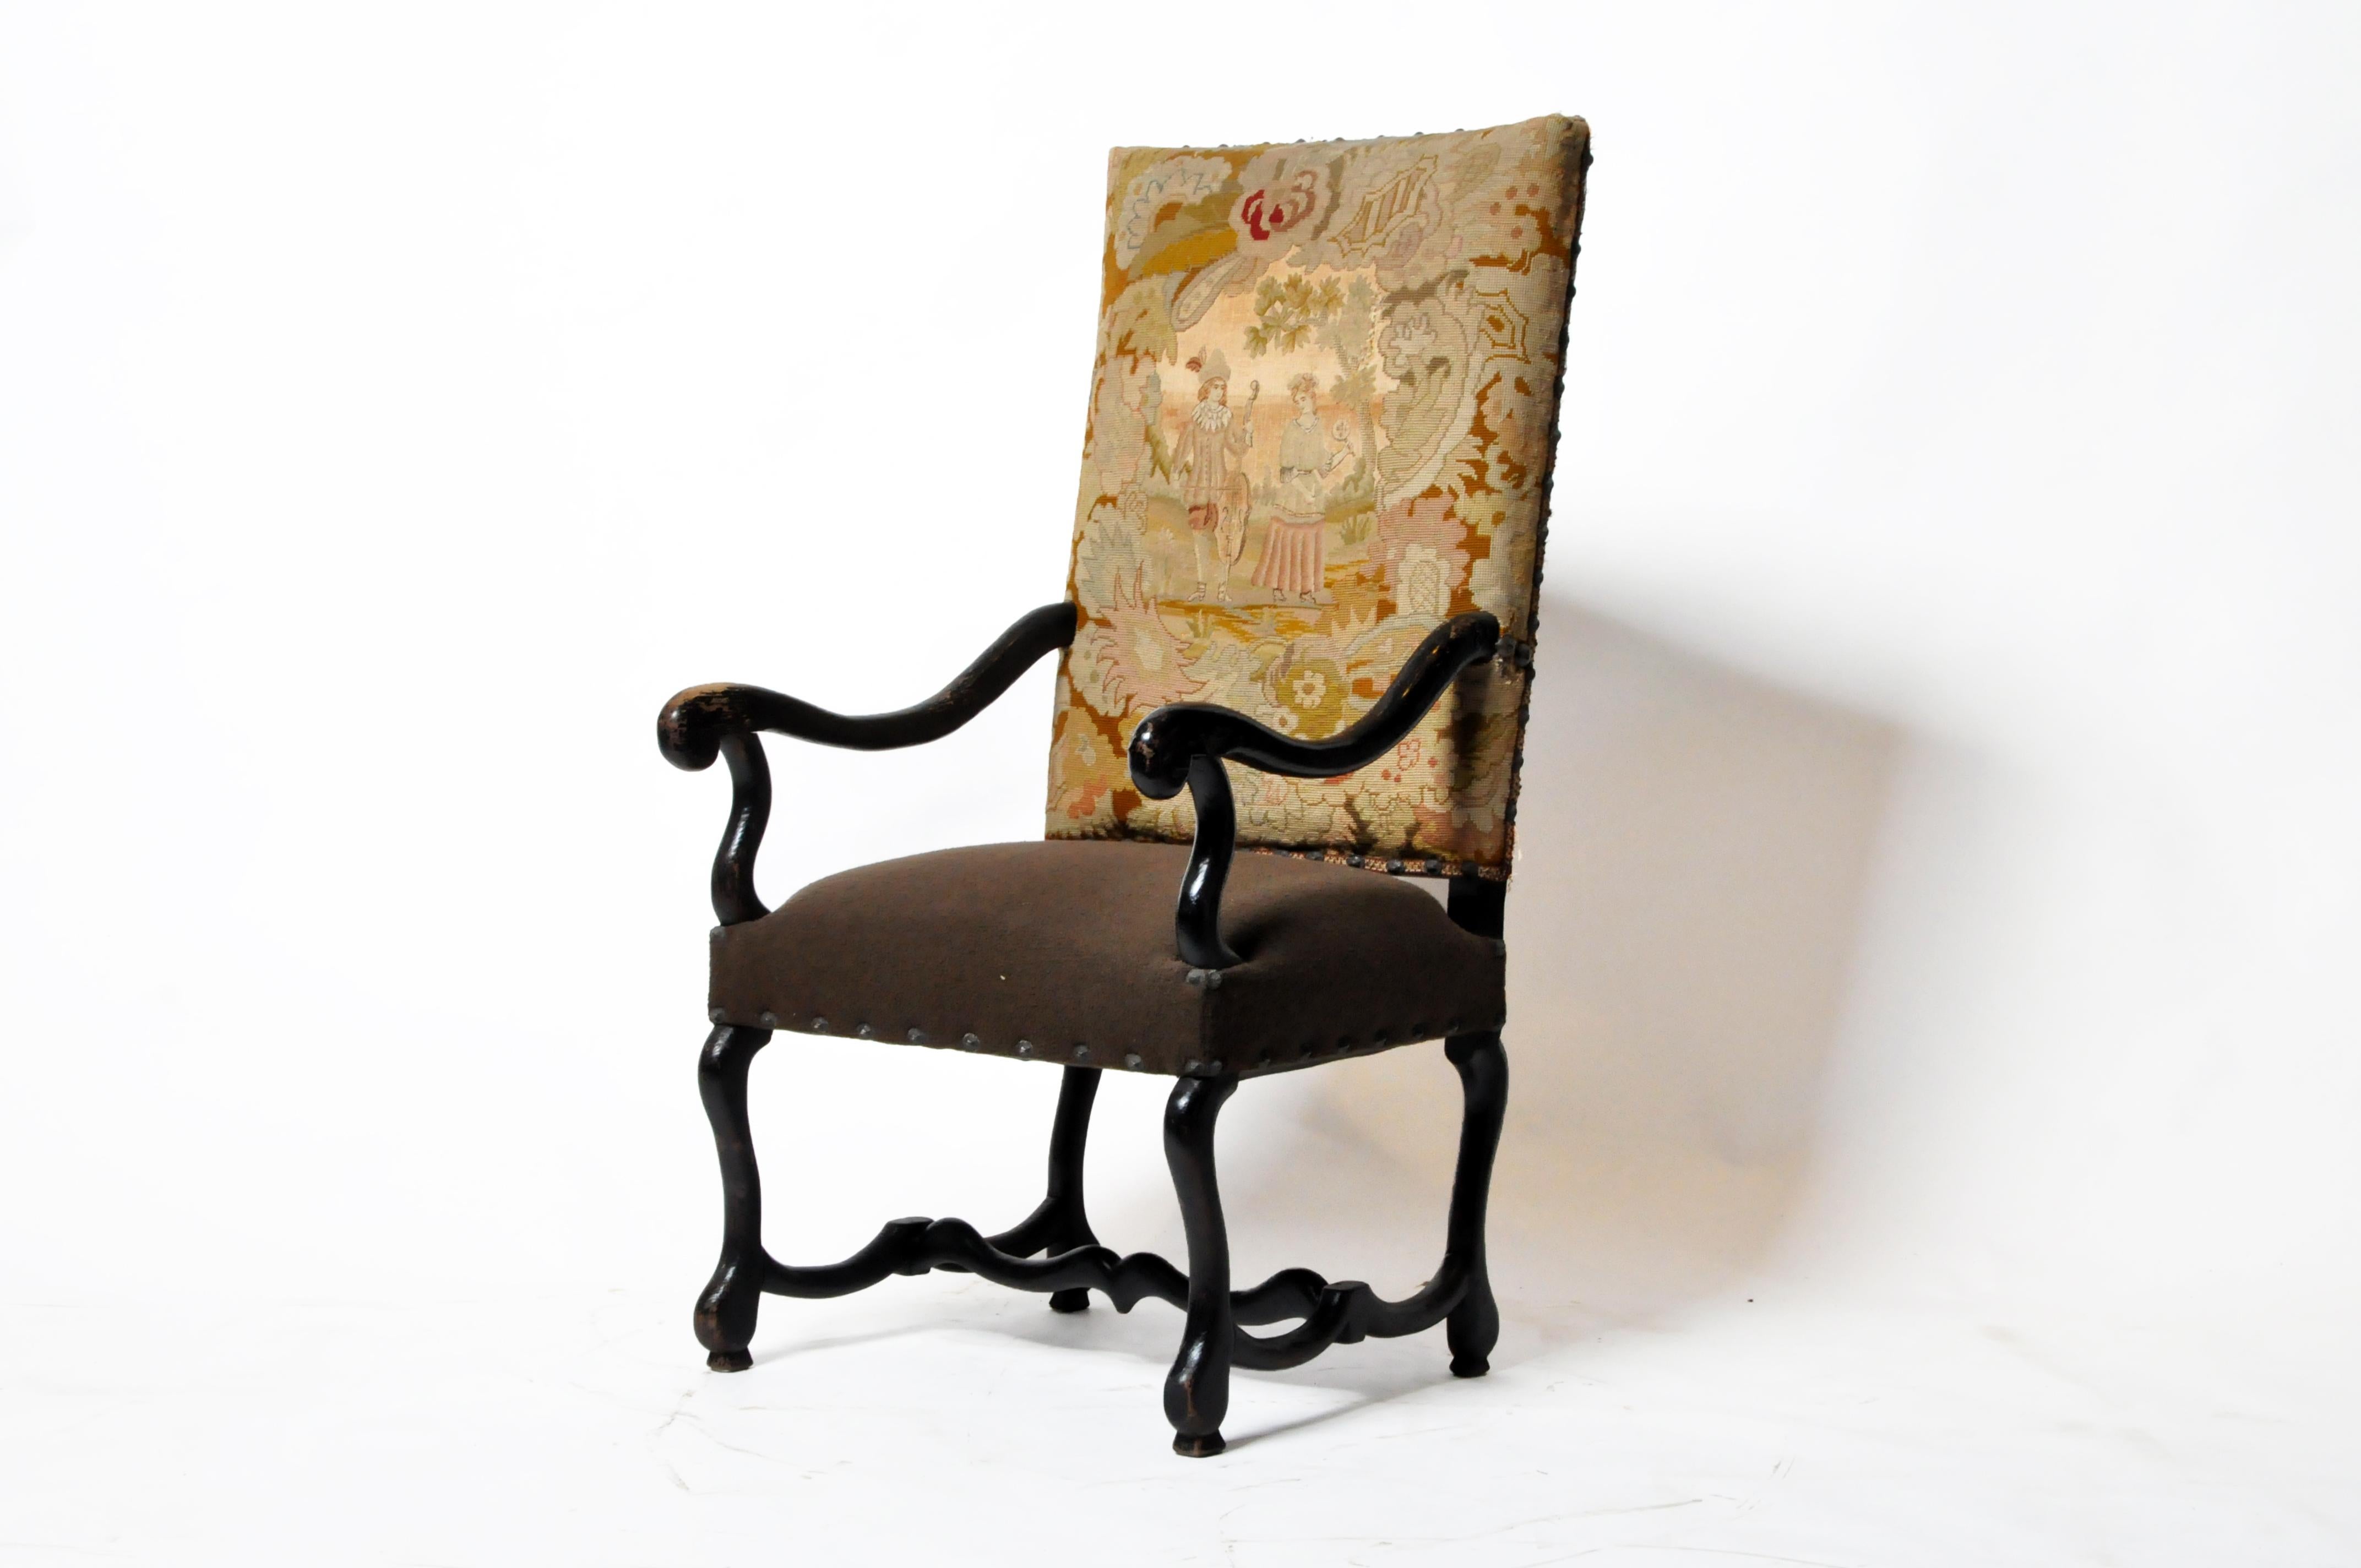 Dieser beeindruckende französische Sessel ist aus Nussbaumholz geschnitzt und verfügt über eine gepolsterte Rückenlehne aus antikem Gobelin und einen Sitz aus gekochter Wolle. Die ursprüngliche Füllung der Sitzkissen wurde durch zeitgemäße